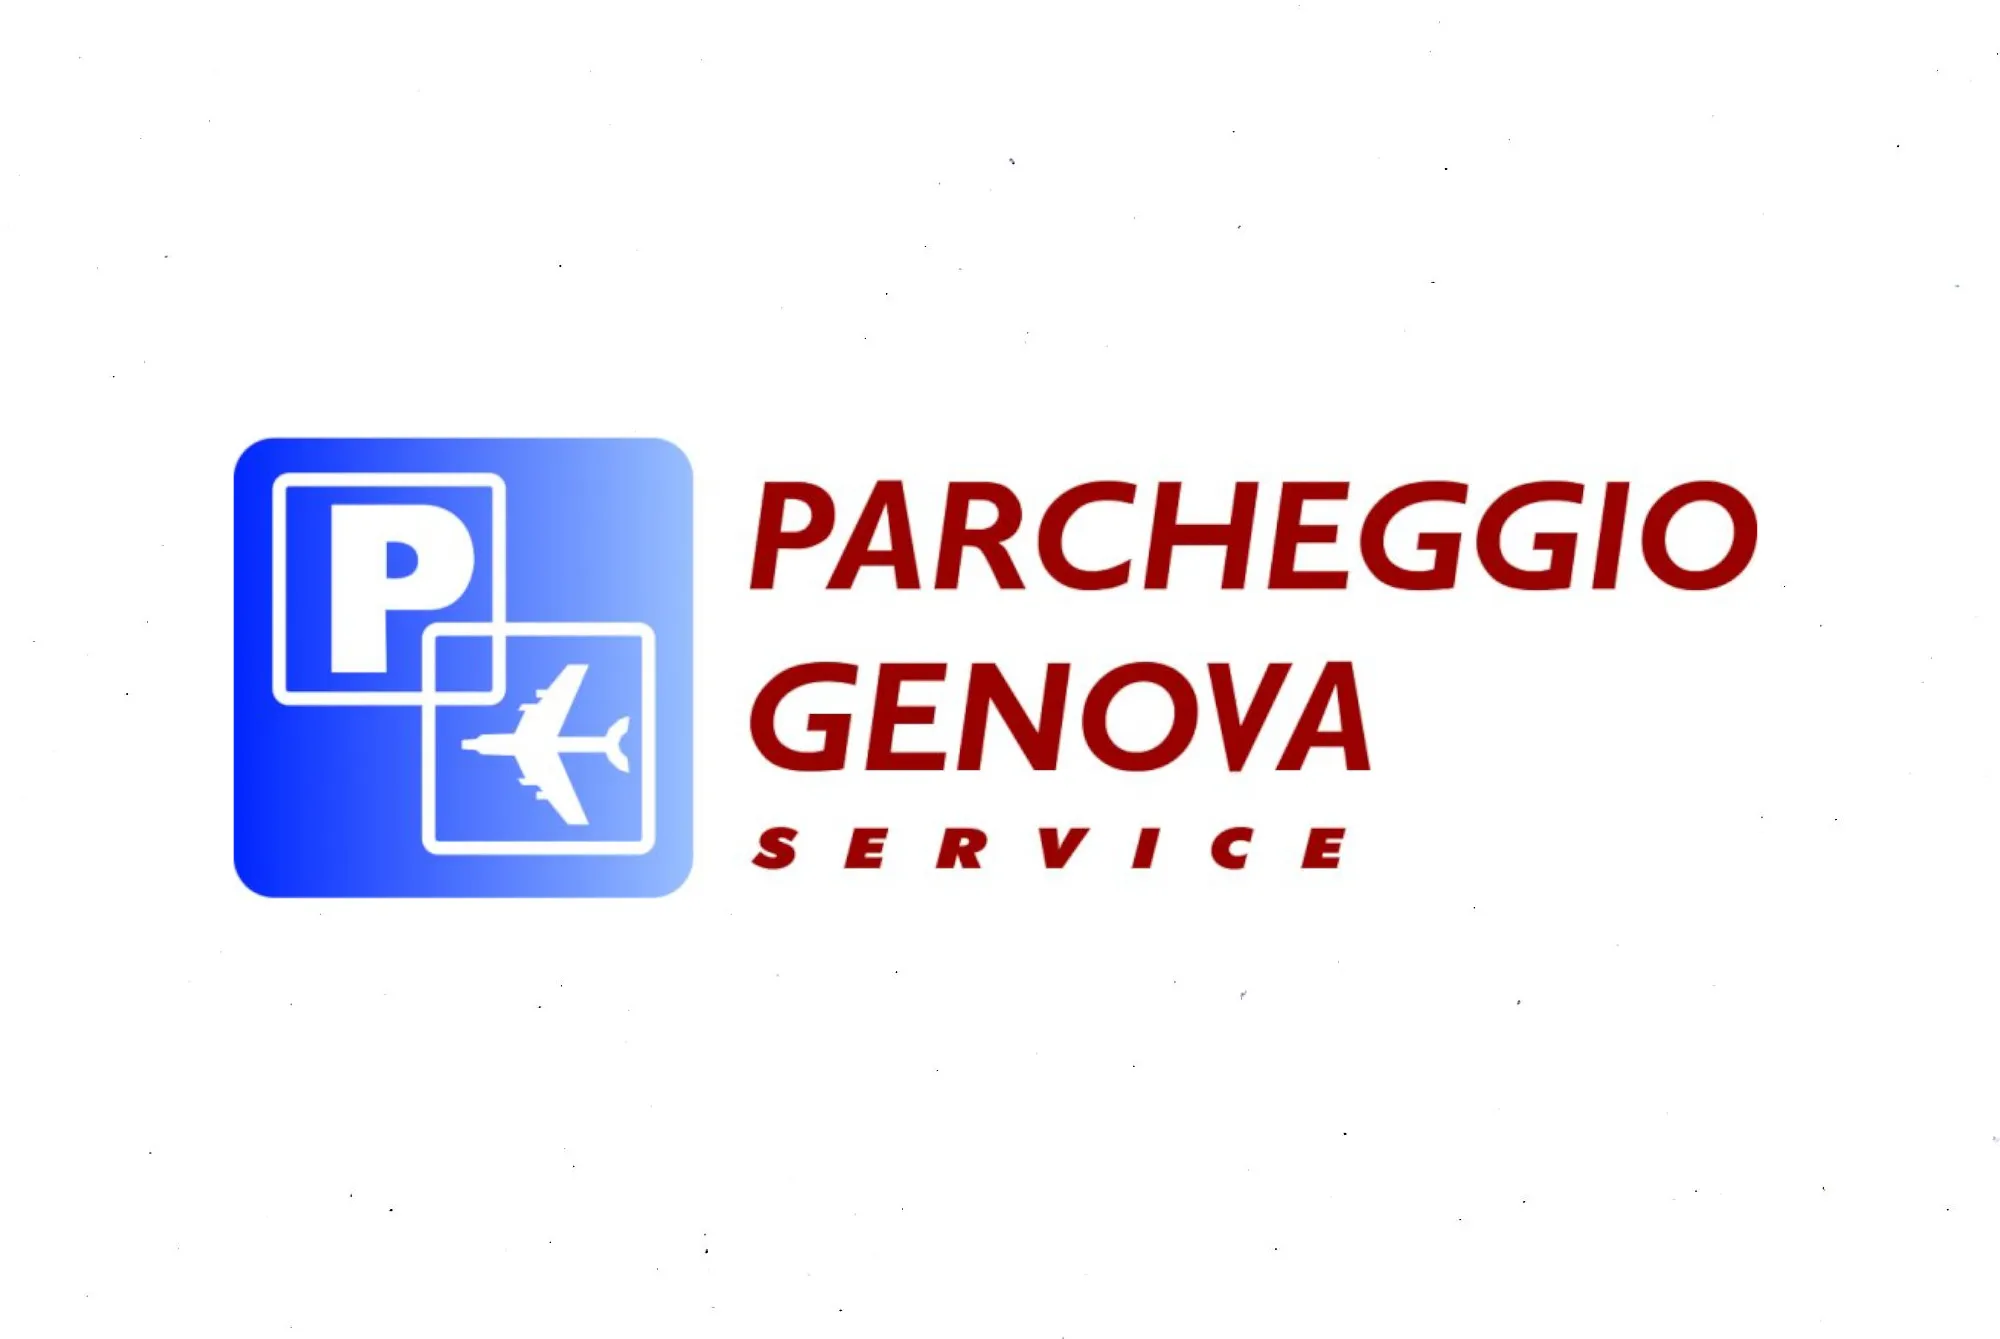 Parcheggio Genova Service (Paga online) - Genoa Airport Parking - picture 1